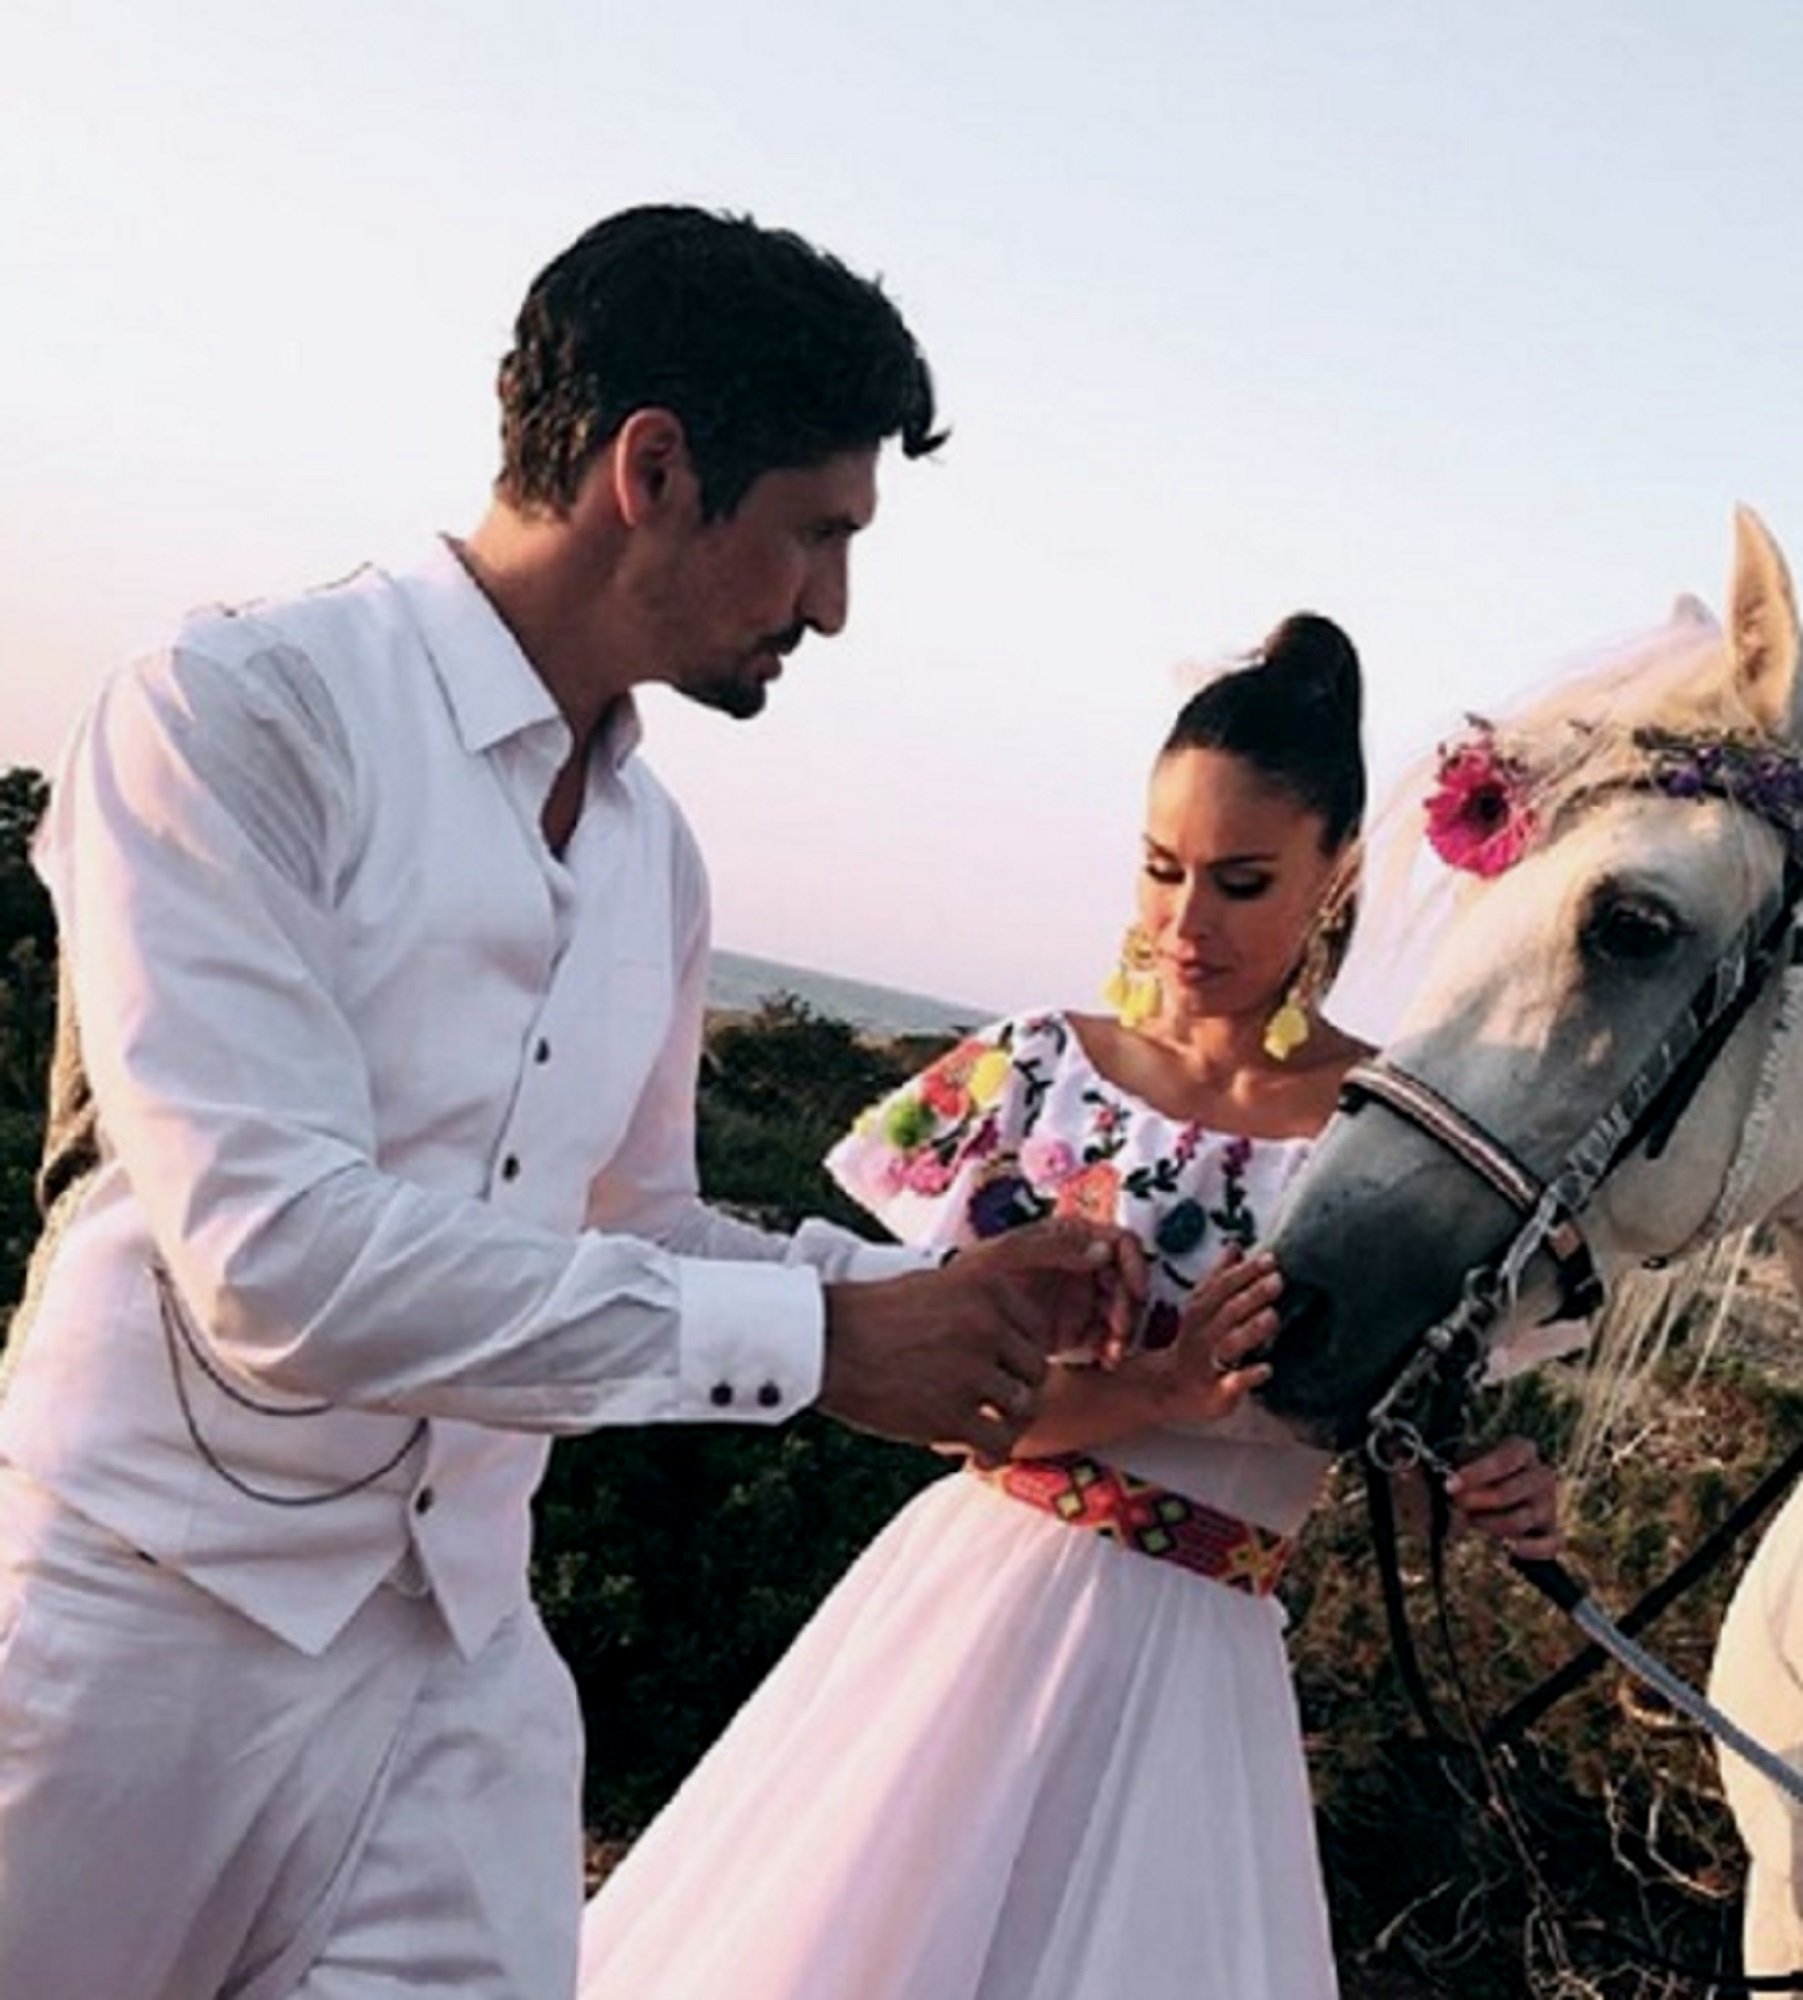 La boda mexicana de Mireia Canalda: vestit de flors, cowboy i calaveres